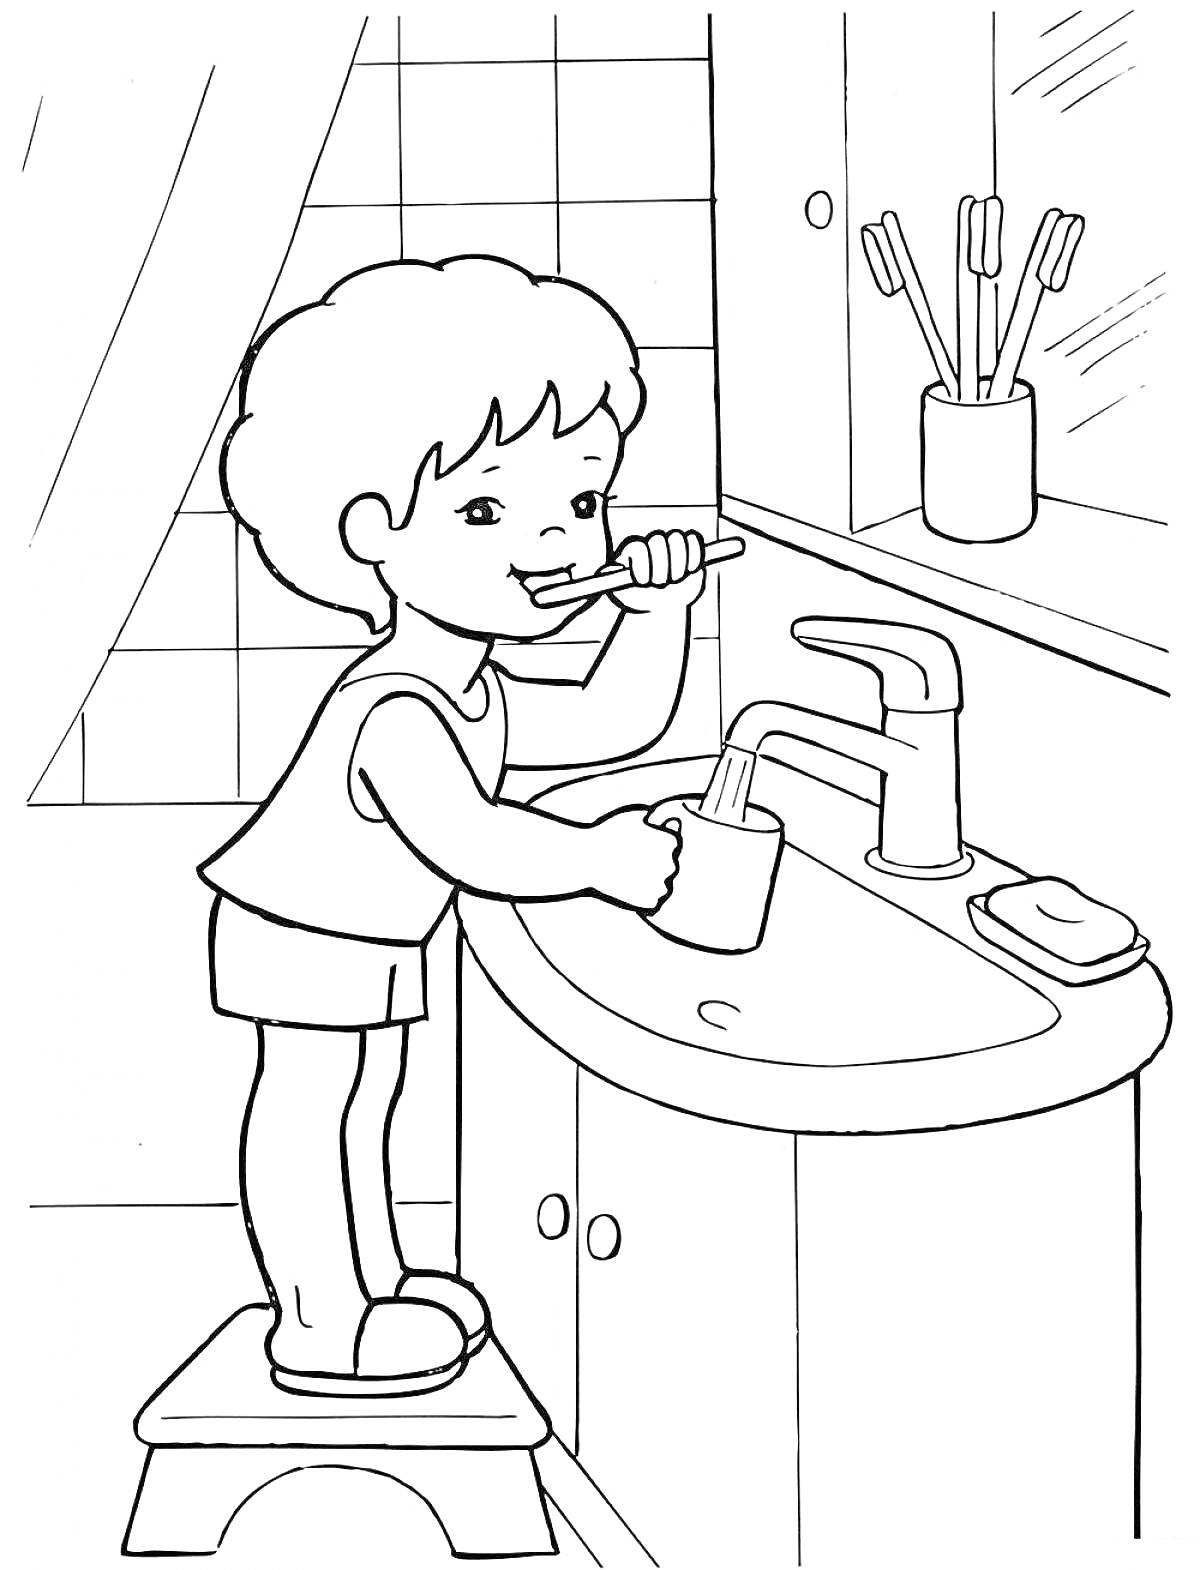 Раскраска Ребёнок чистит зубы возле раковины с кранами и зубными щетками